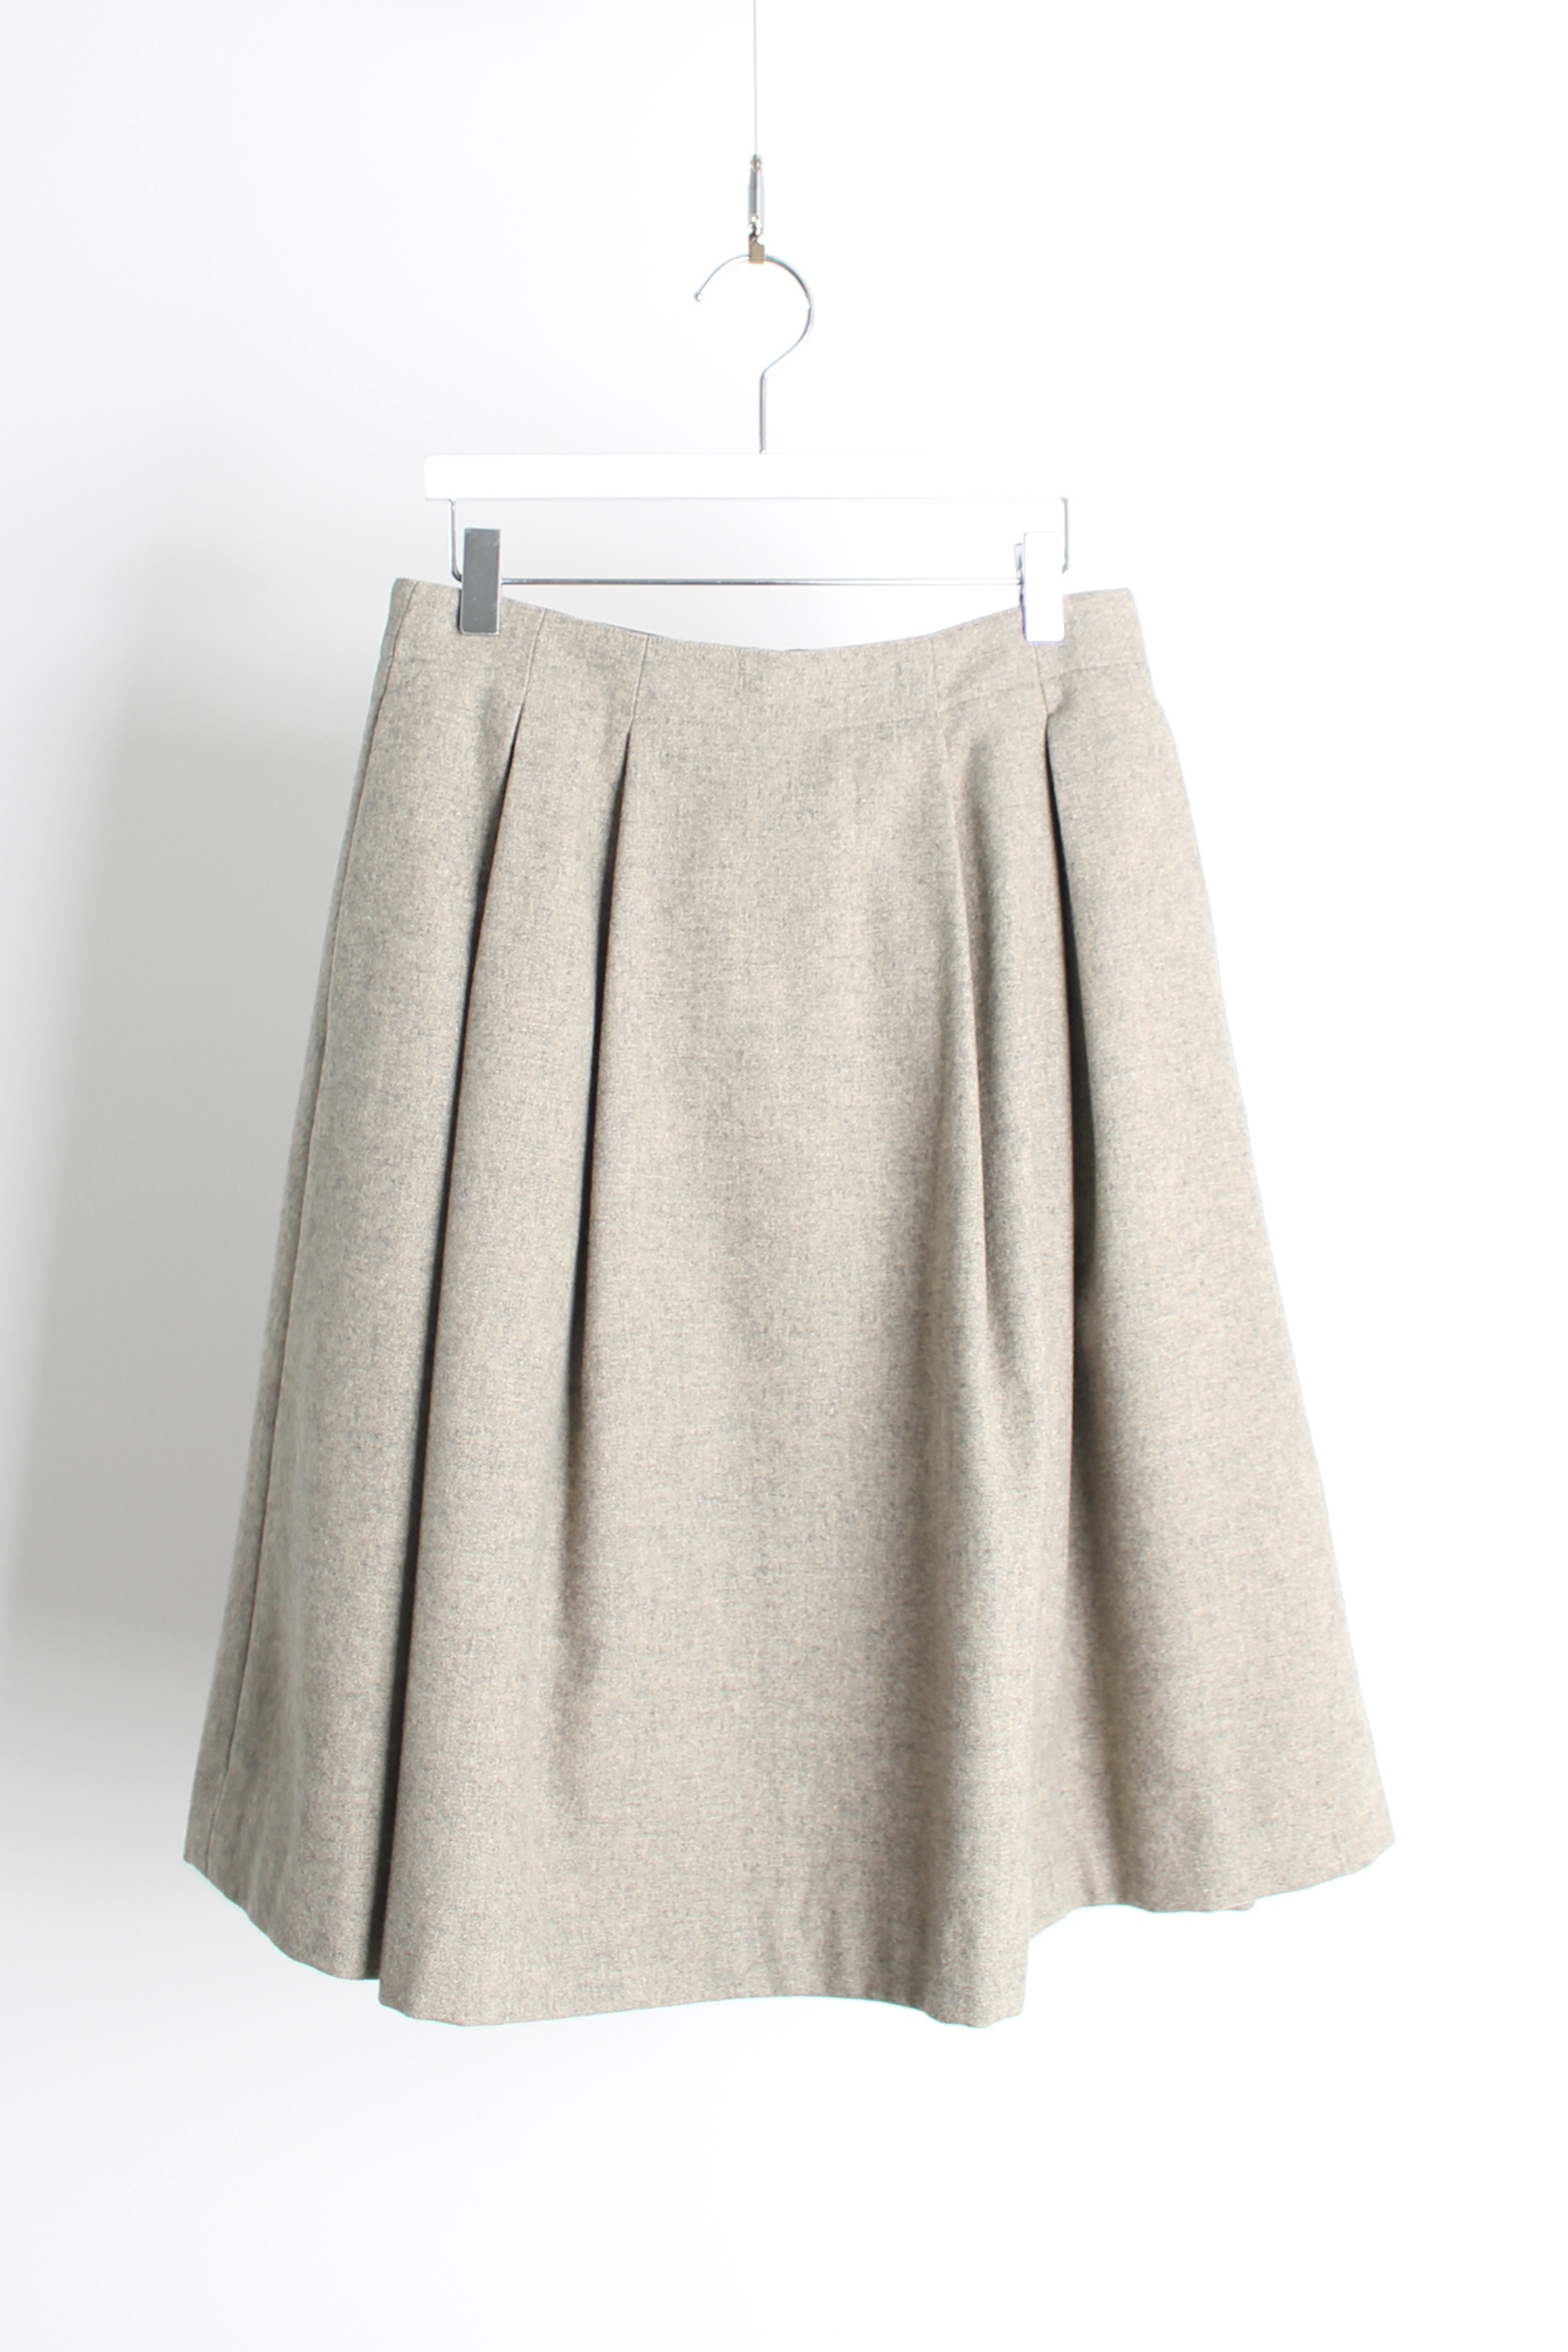 MARGARET HOWELL wool skirt